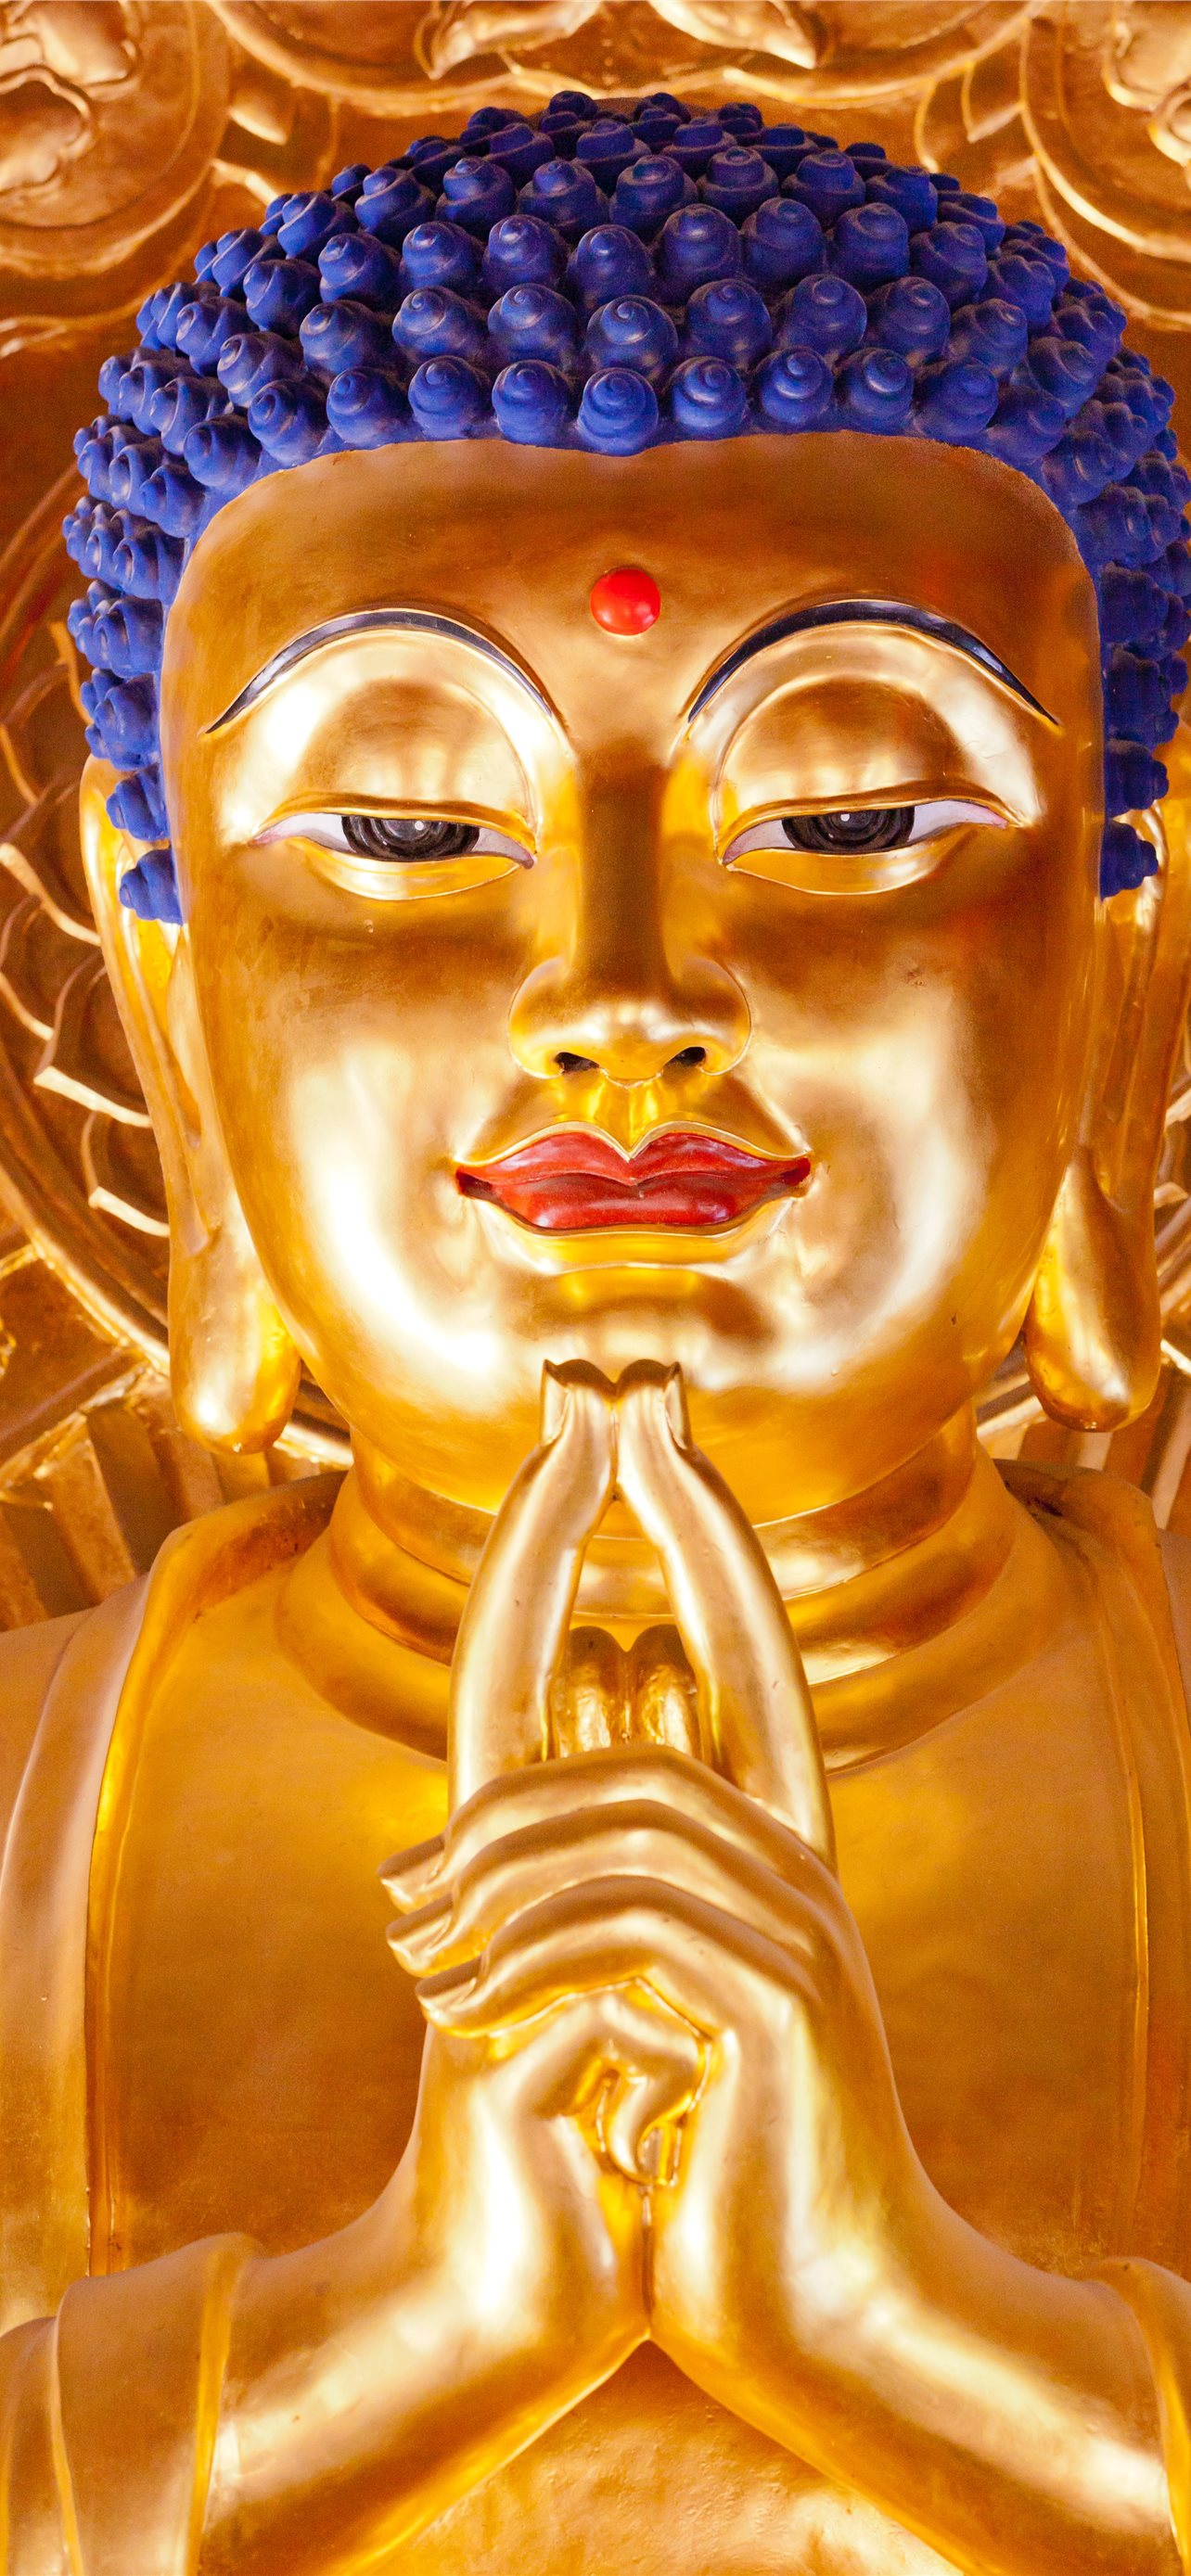 Nét đẹp của tượng Phật vàng sáng lấp lánh sẽ làm bạn say đắm trước sự thanh tịnh và tốt đẹp. Sản phẩm được làm từ chất liệu cao cấp, đảm bảo độ bền và độ chính xác tuyệt vời.